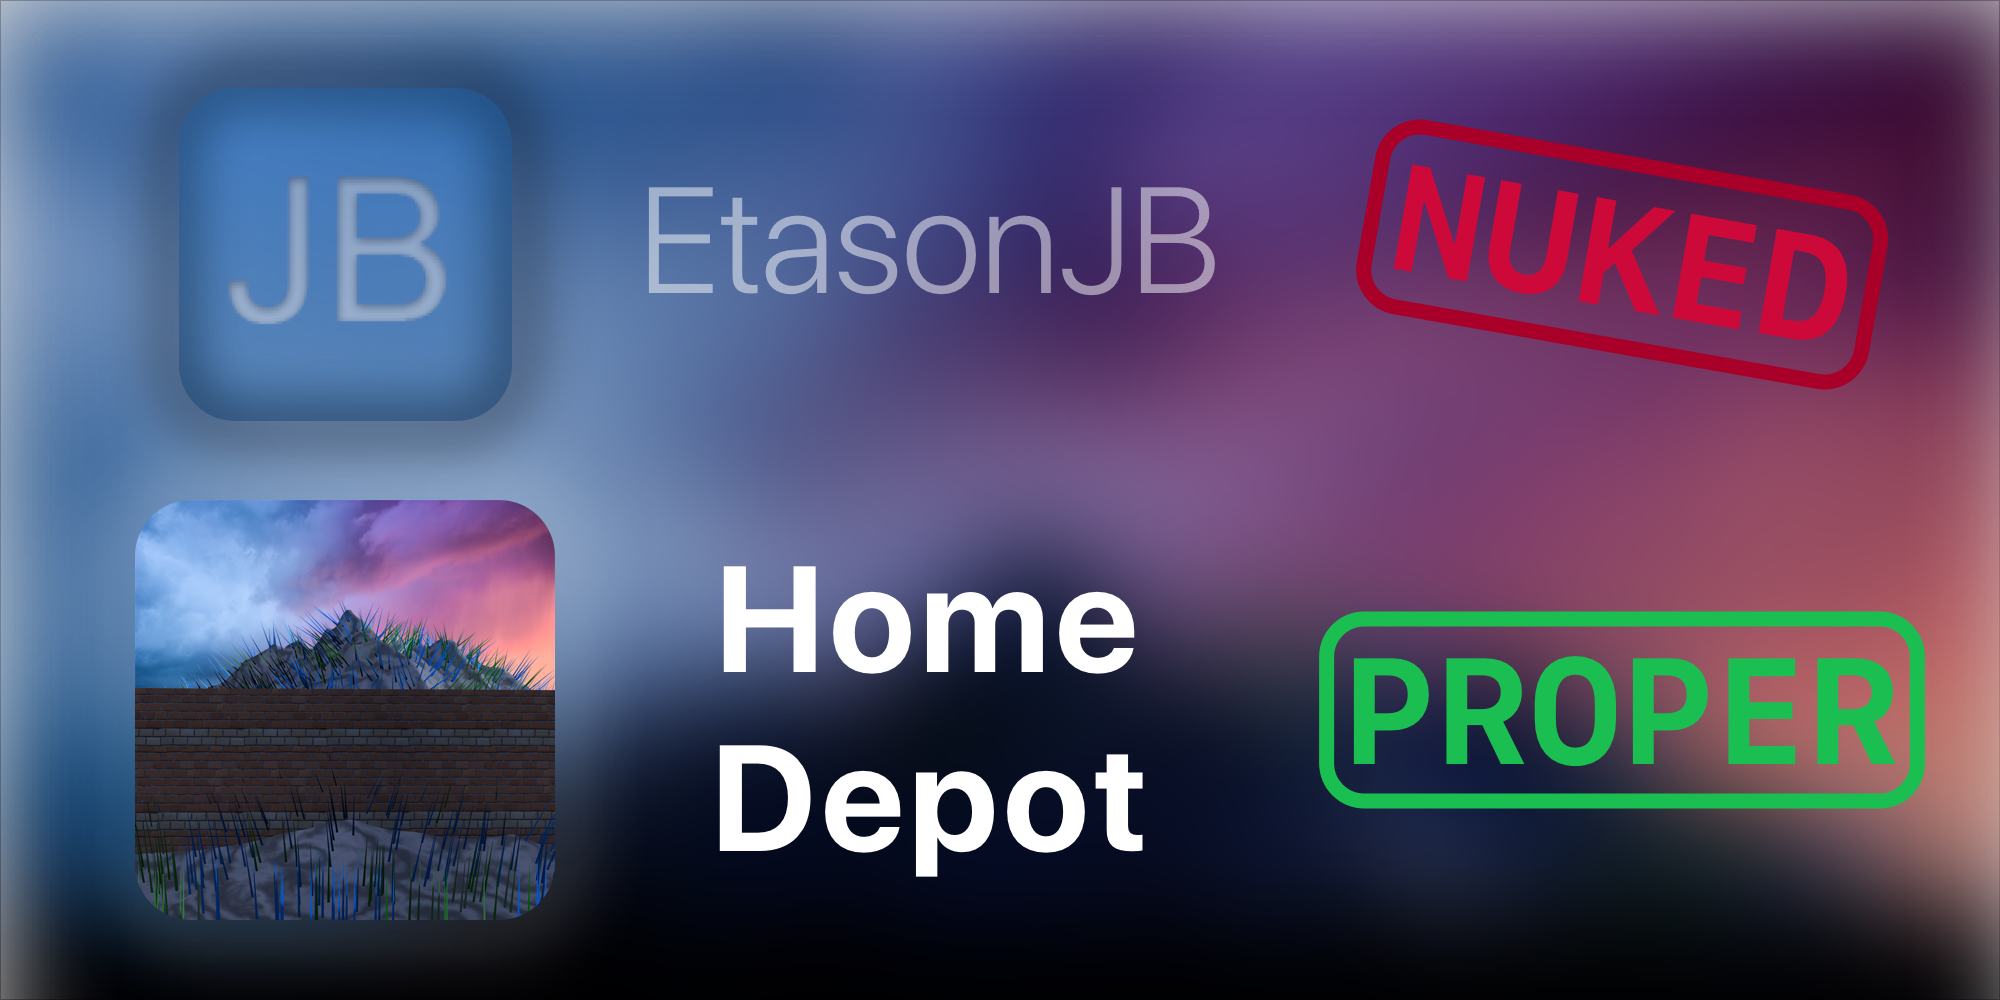 Home Depot iOS 8.4.1 32-bit Mixtape Player